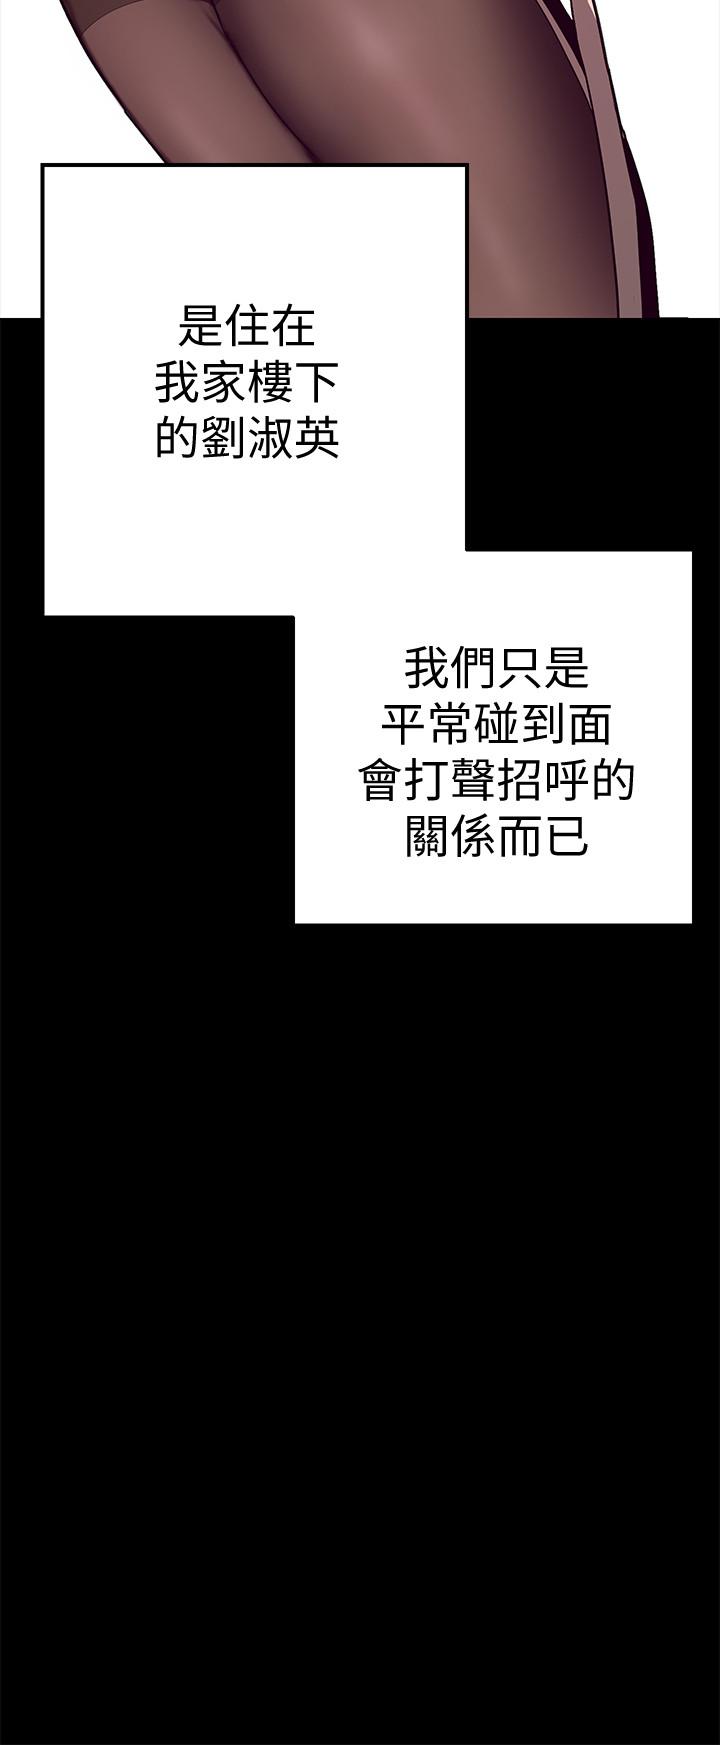 [尹坤志&高孫志]美丽新世界 EP.1(正體中文)高畫質版本 11